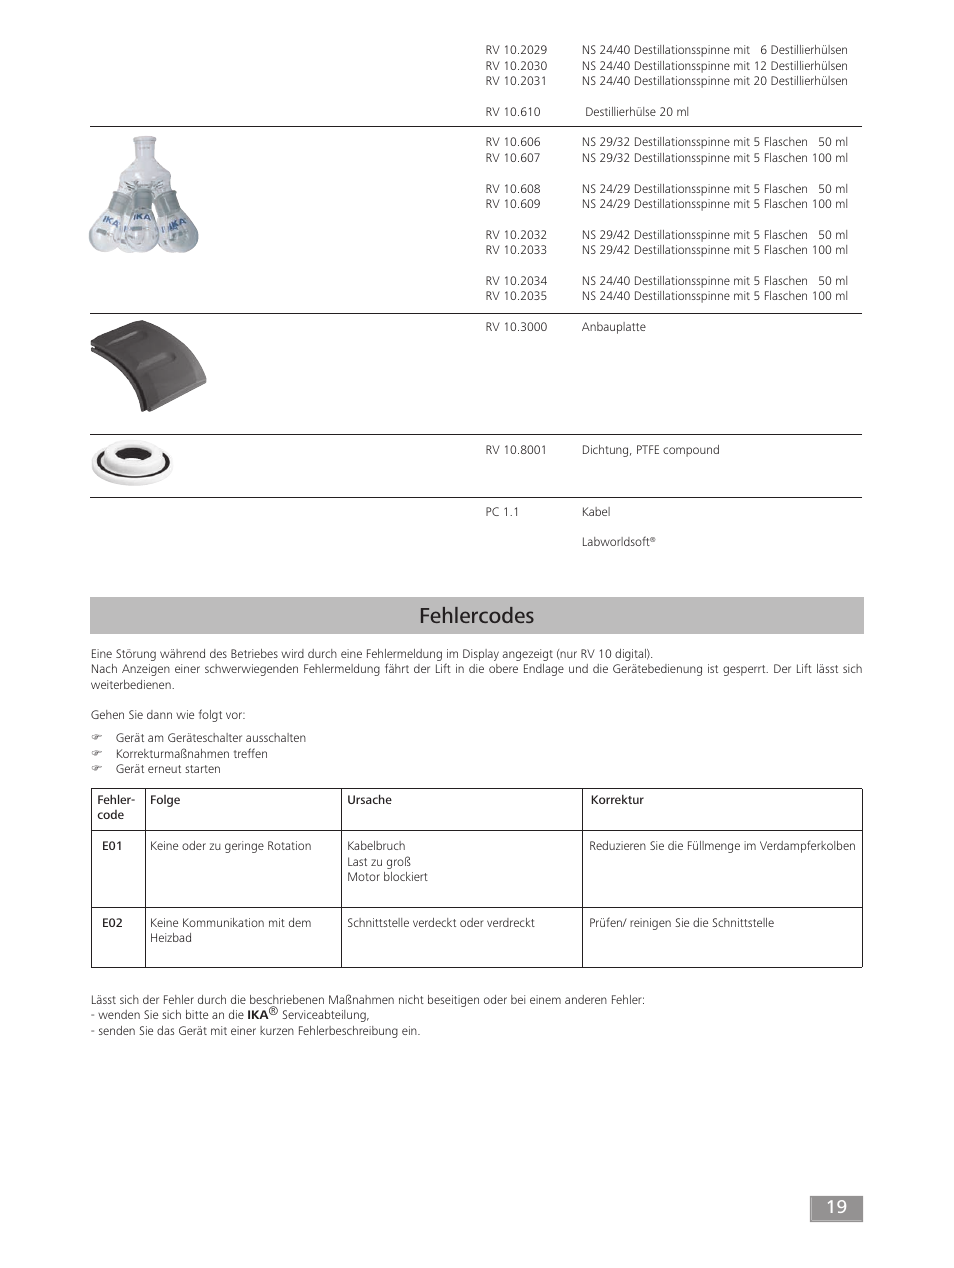 Fehlercodes | IKA RV 10 digital FLEX User Manual | Page 19 / 84